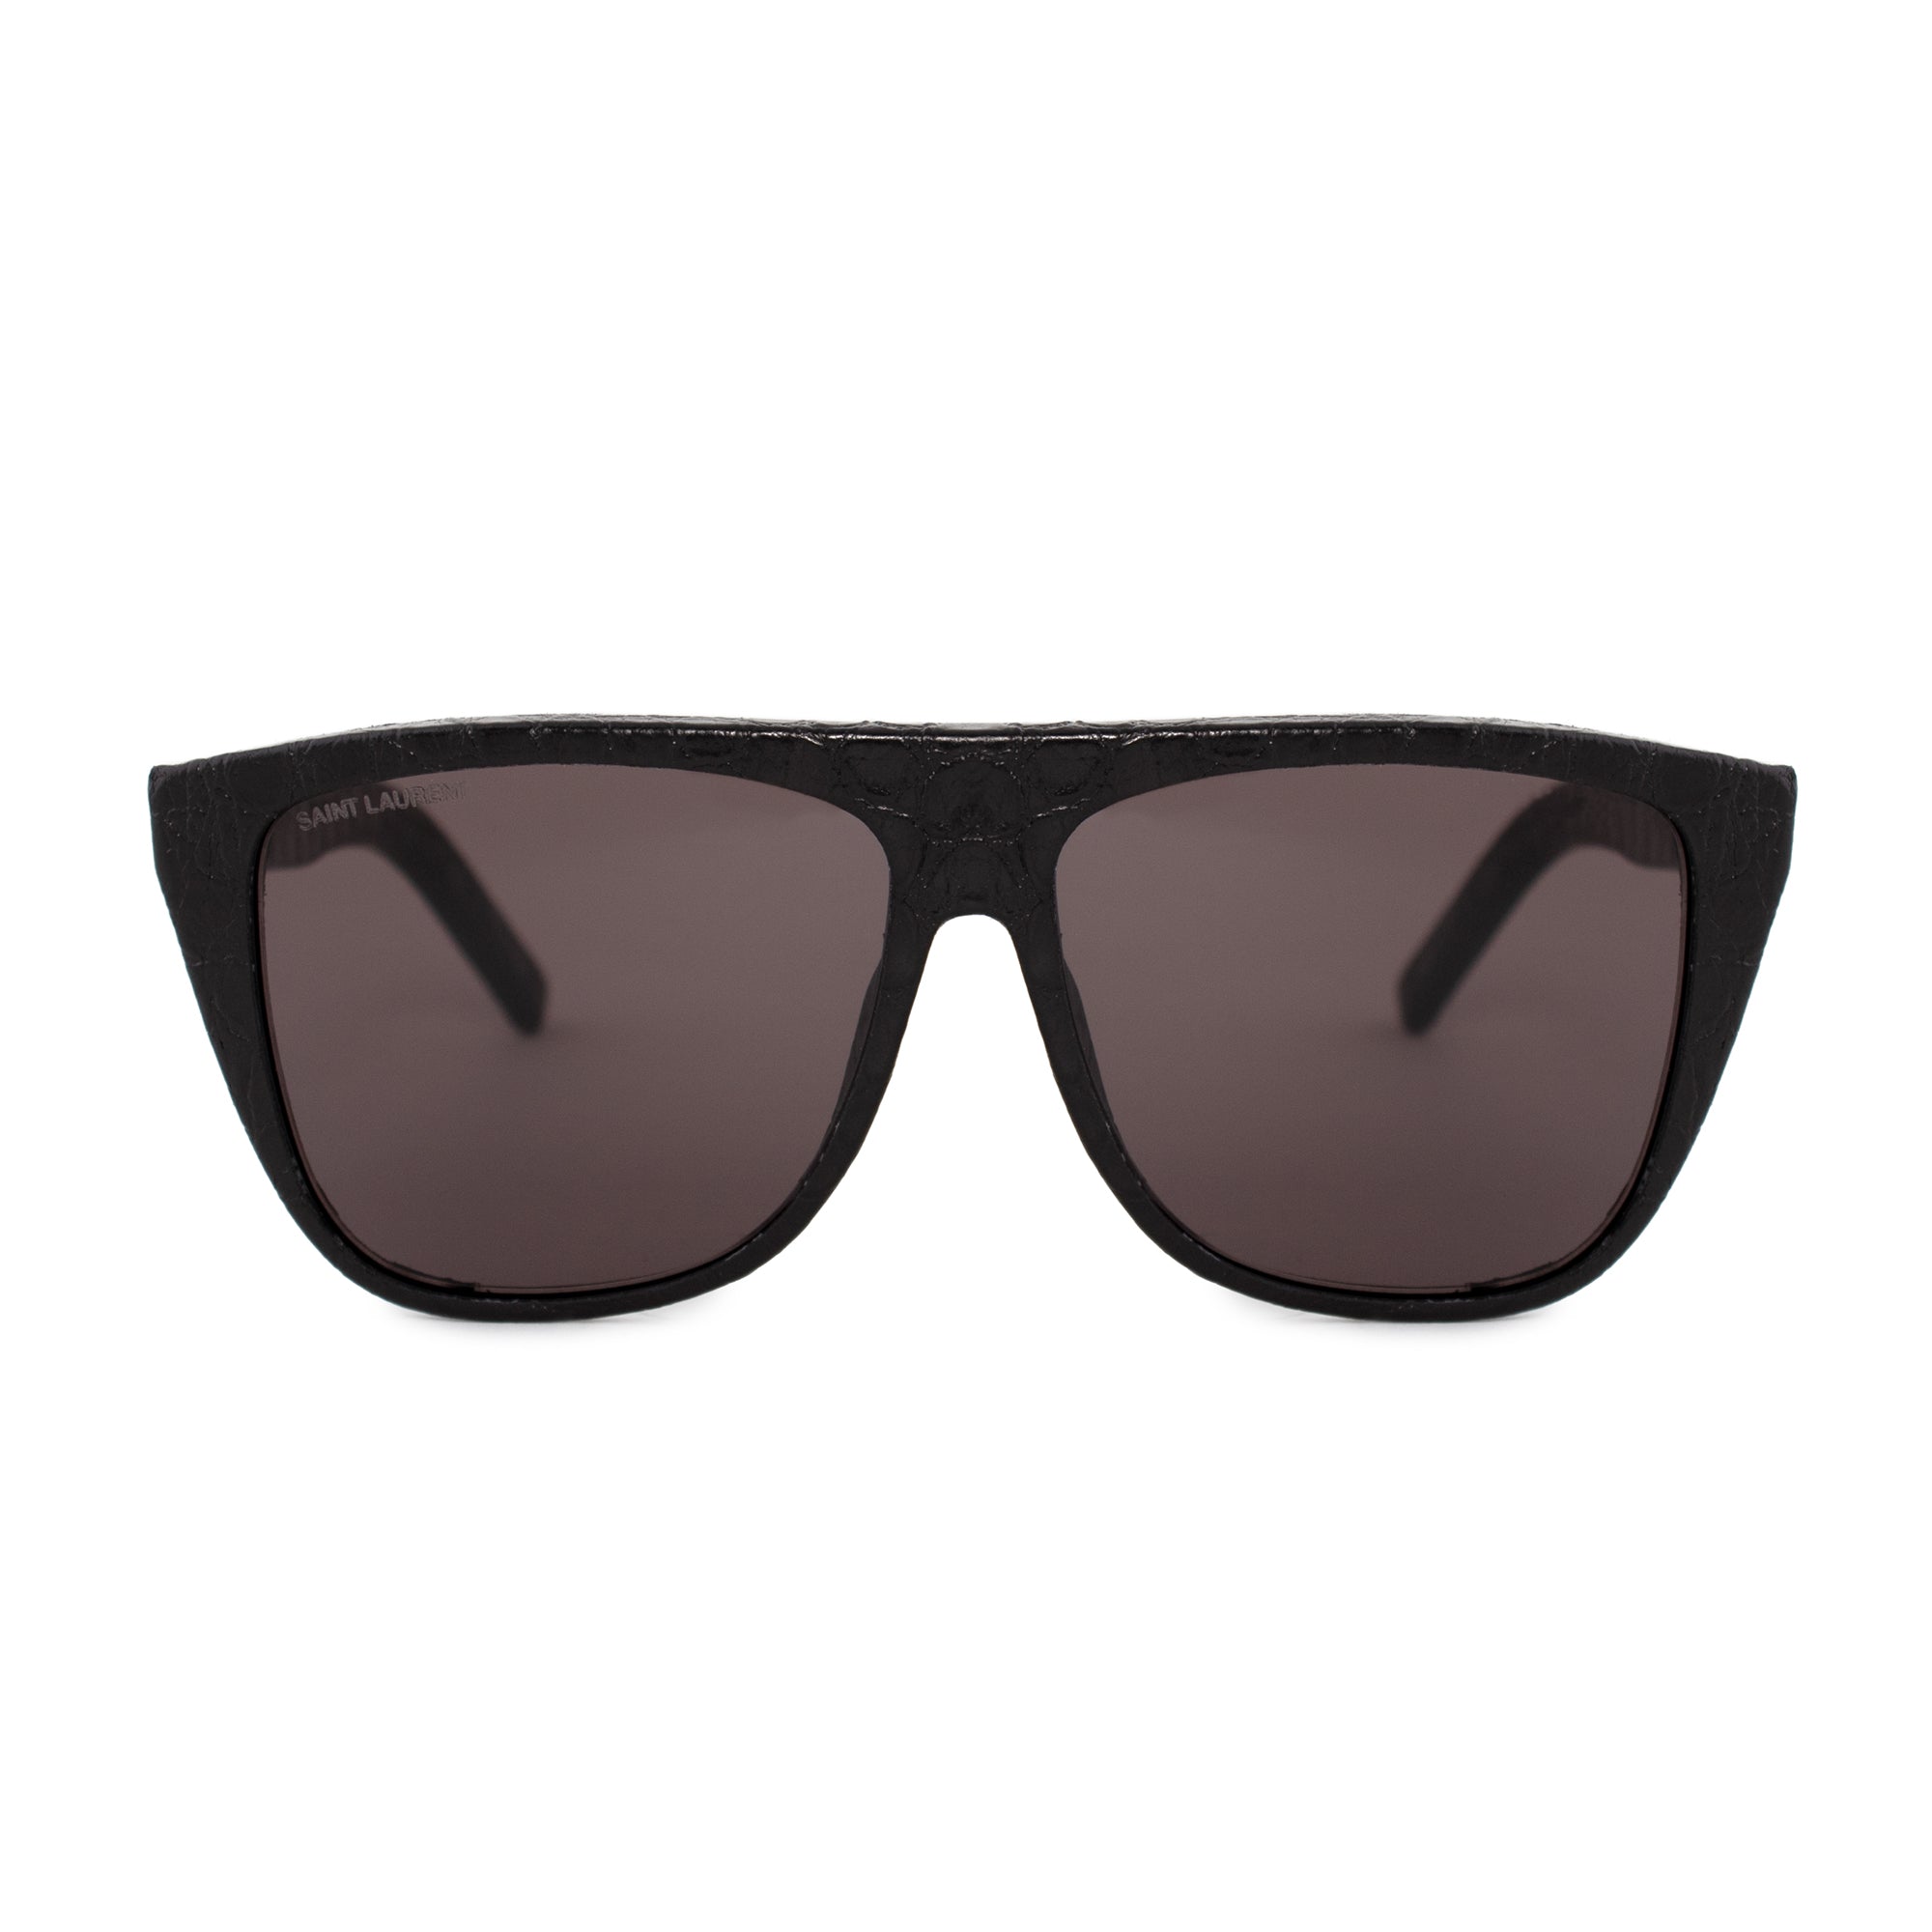 Saint Laurent rectangular Sunglasses SL1 012 59